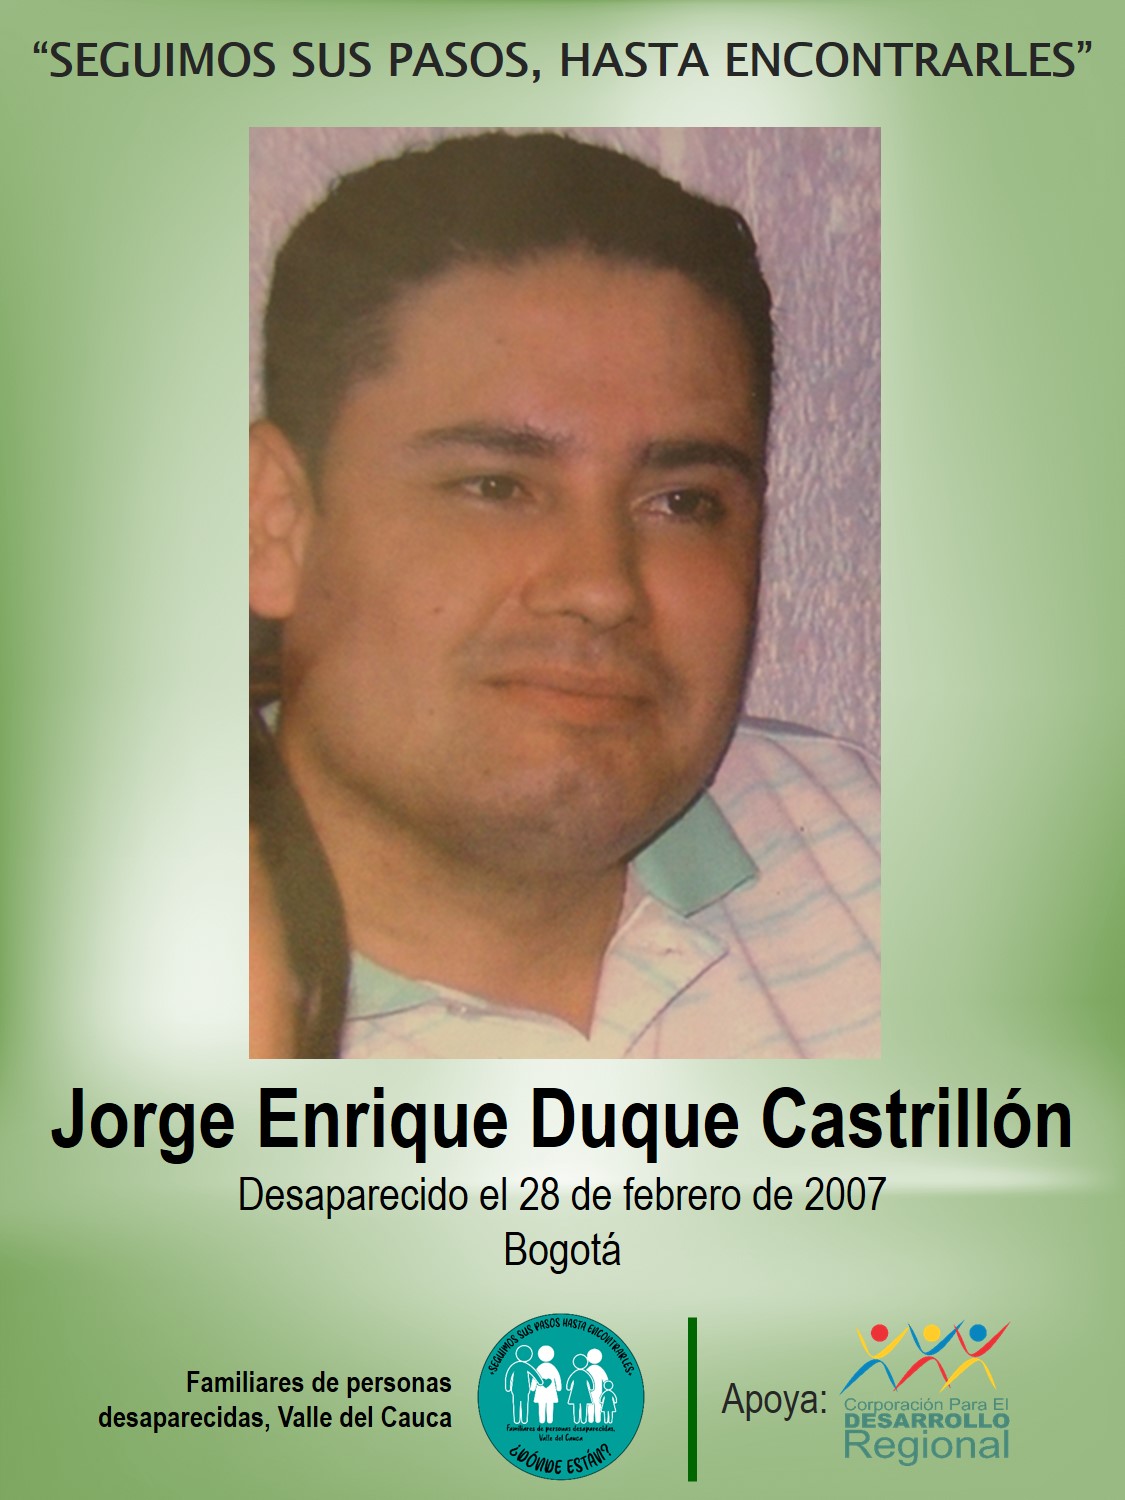 Jorge Enrique Duque Castrillón